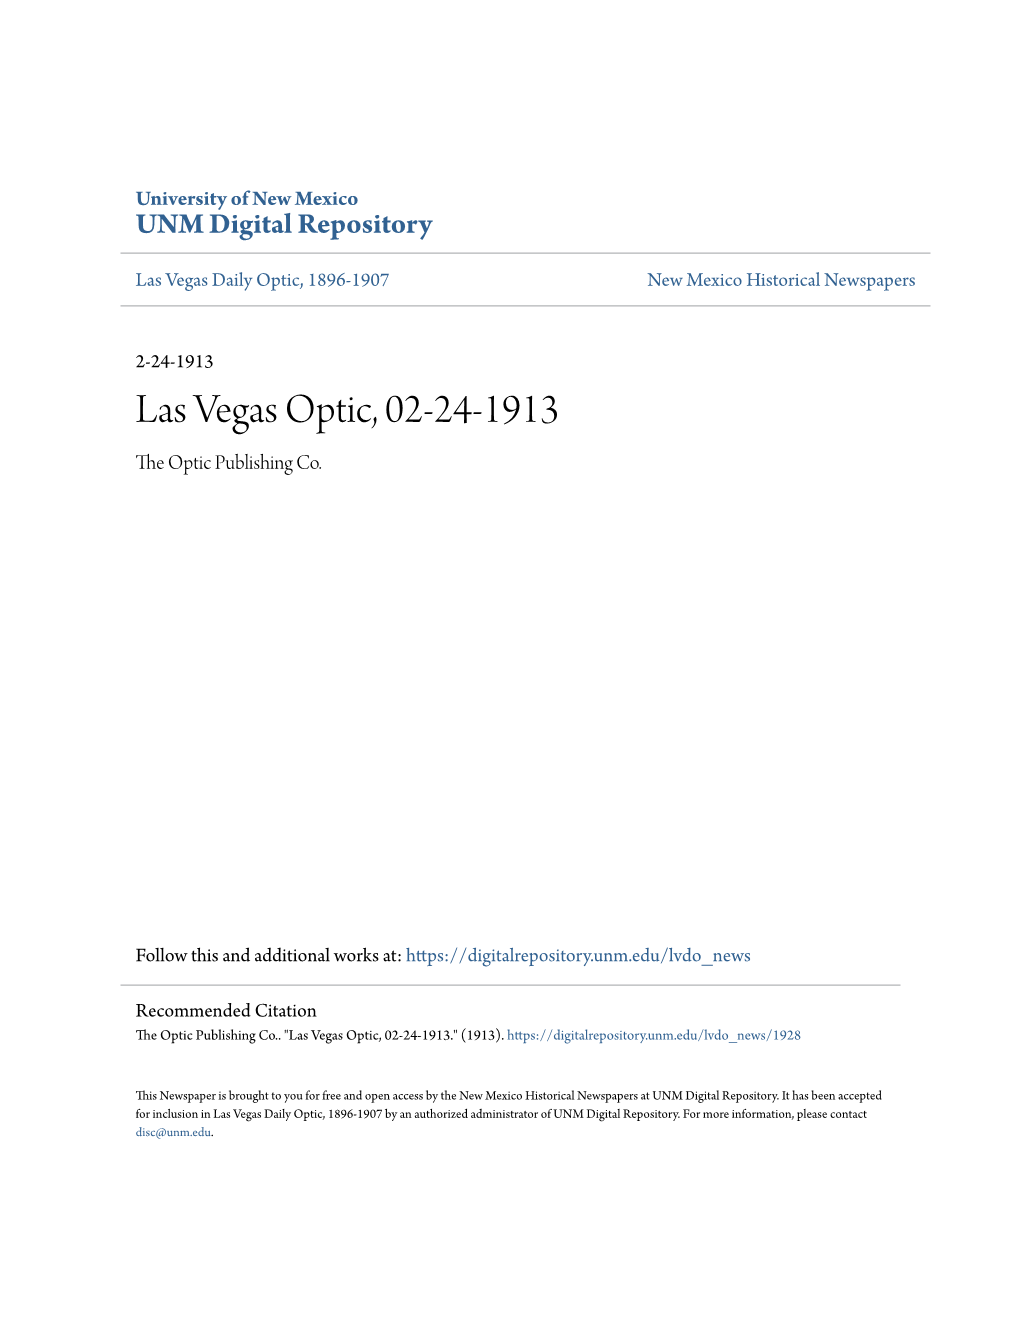 Las Vegas Optic, 02-24-1913 the Optic Publishing Co